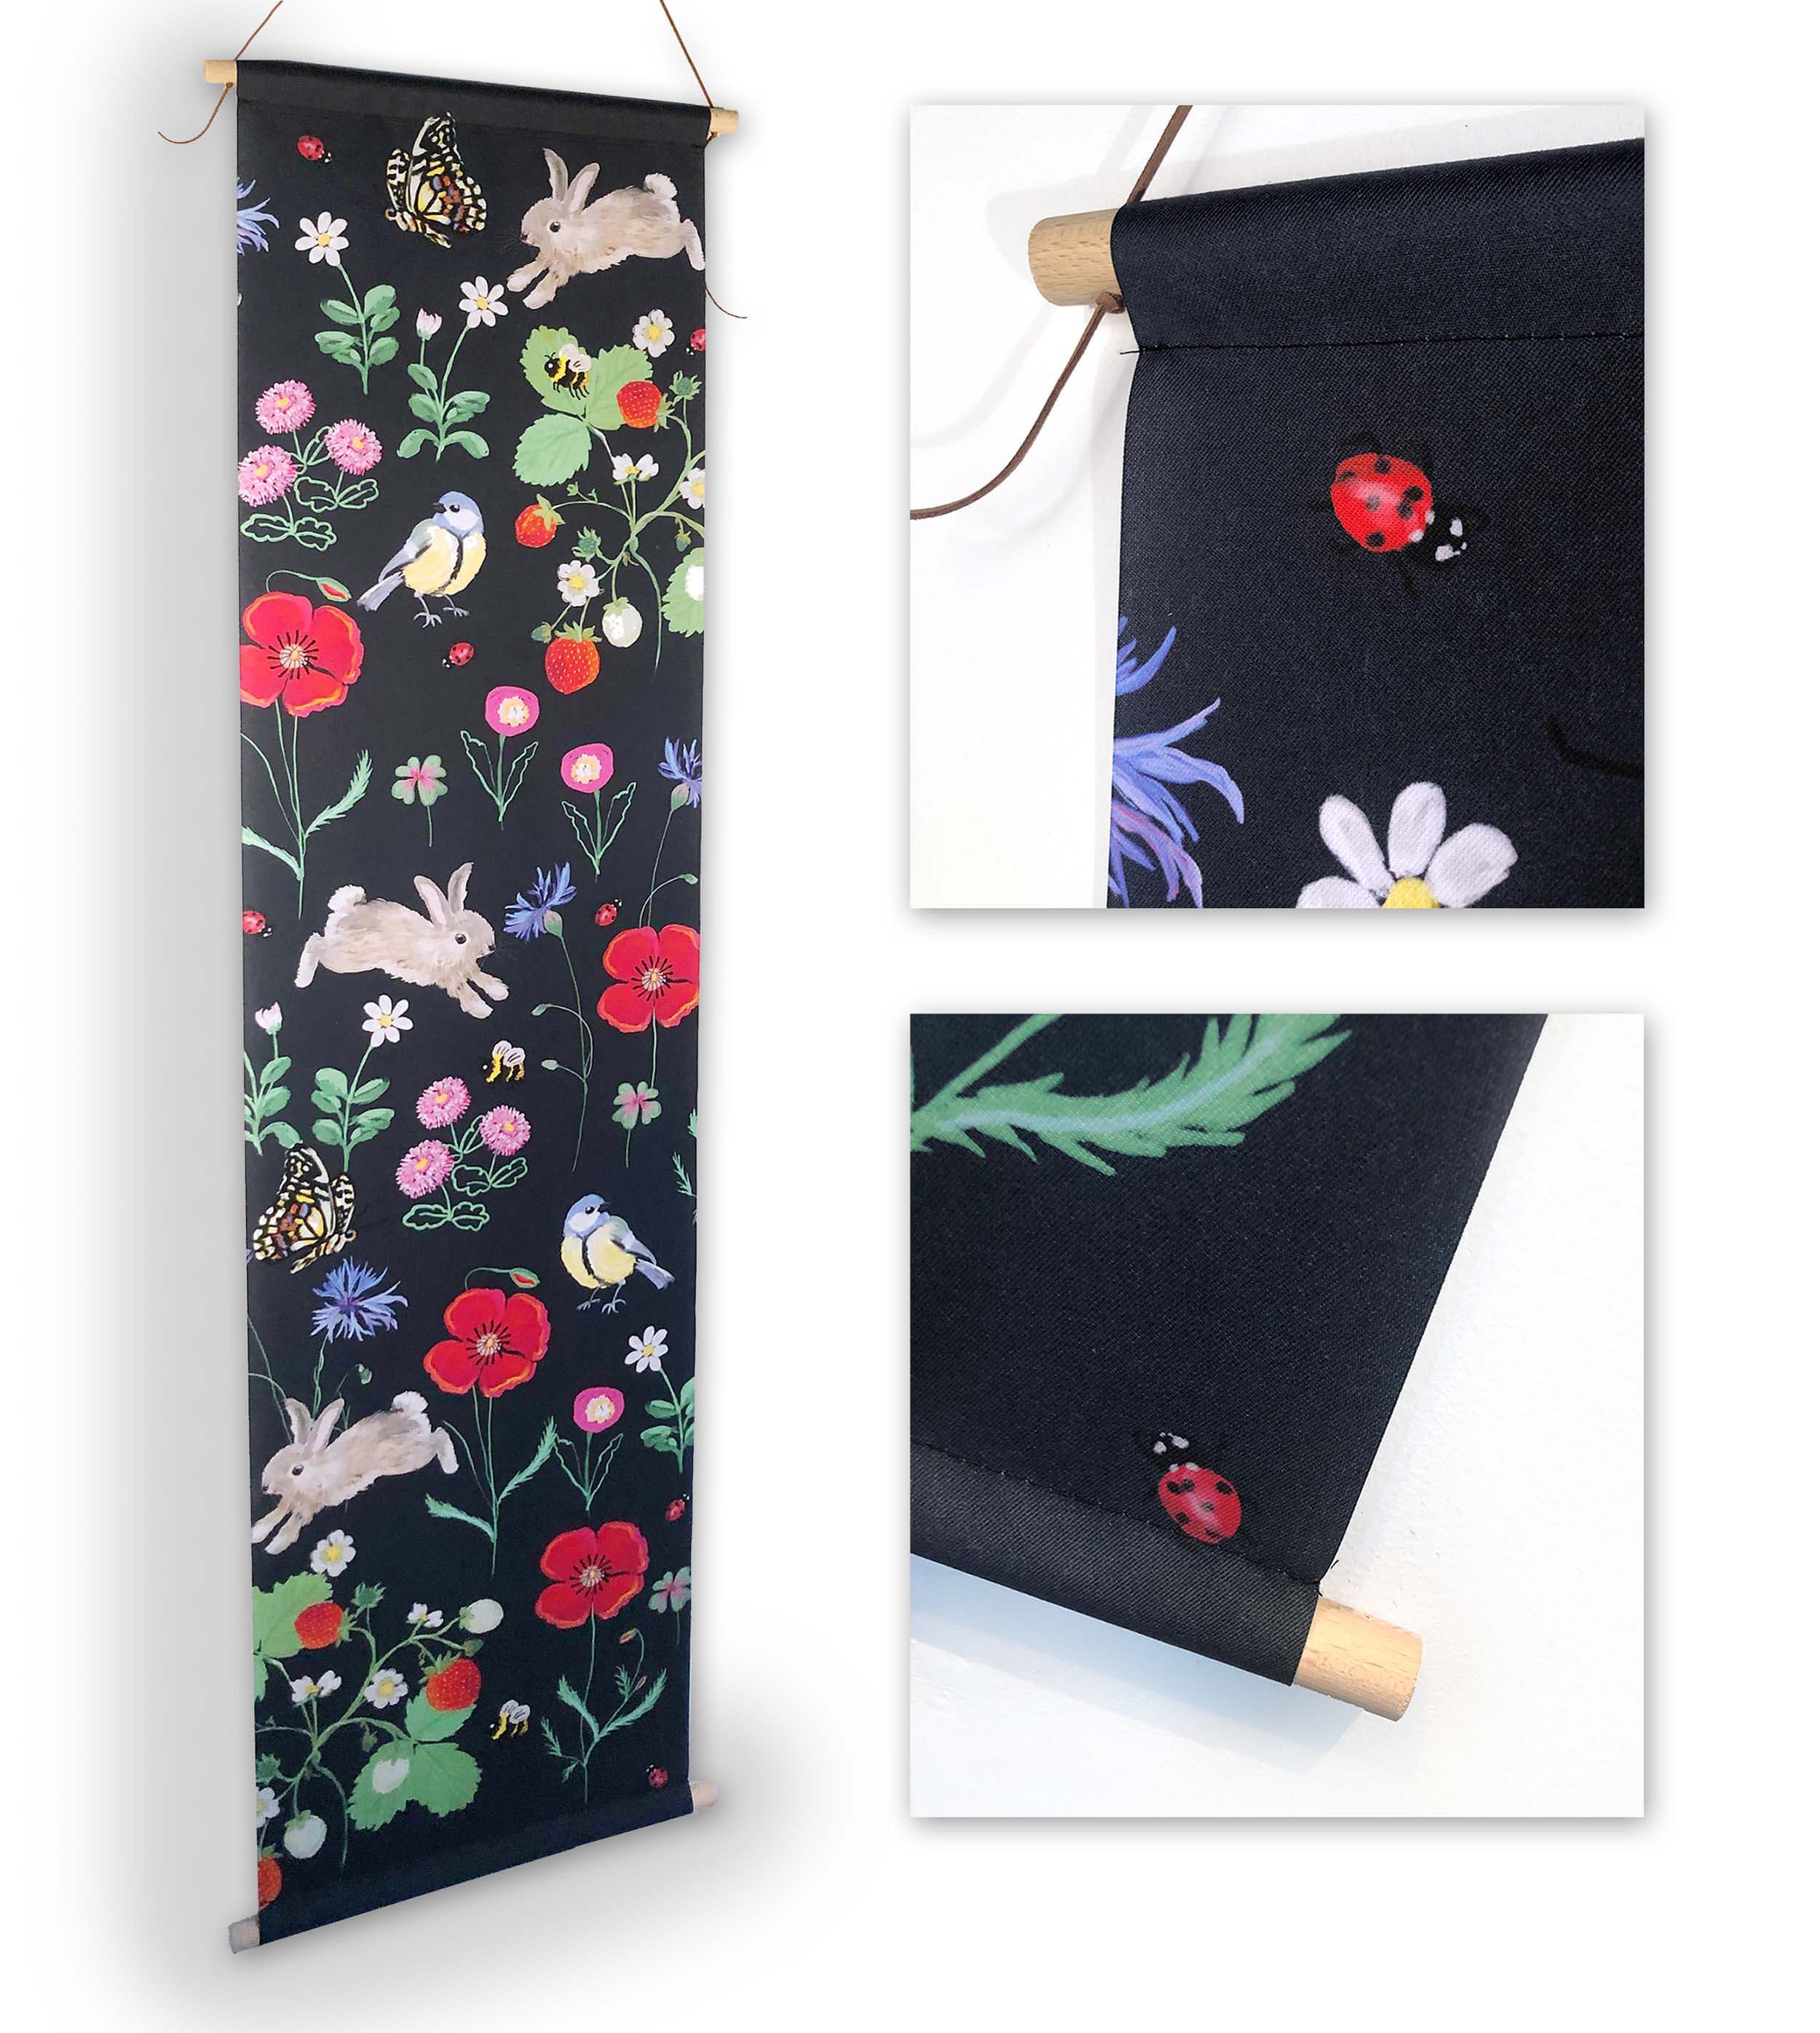 Betoverende Textielposter: Konijntjes, bloemen en vlinders